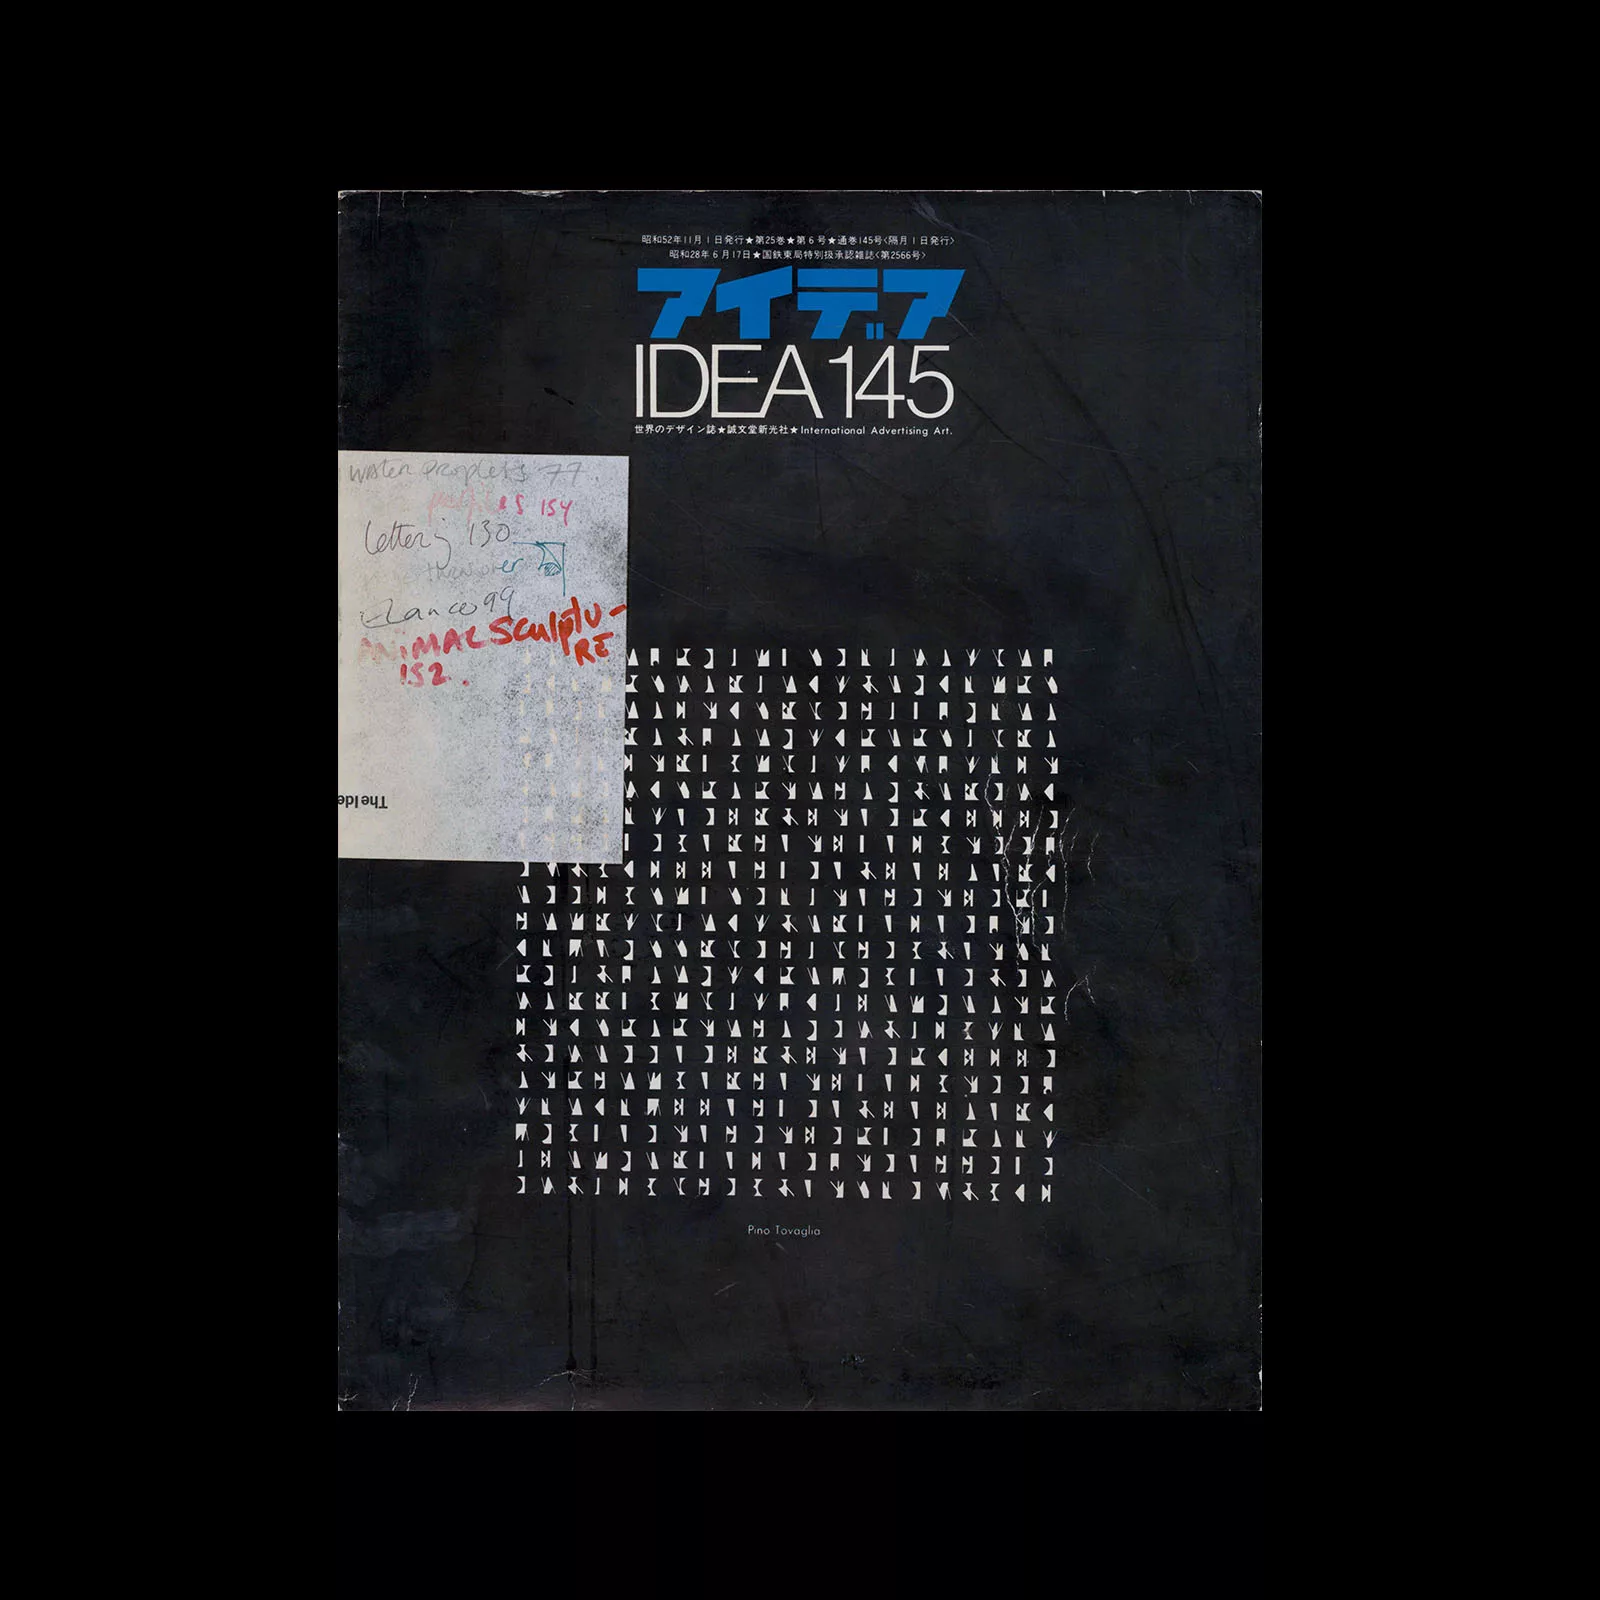 Idea 145, 1977-11. Cover design by Pino Tovaglia